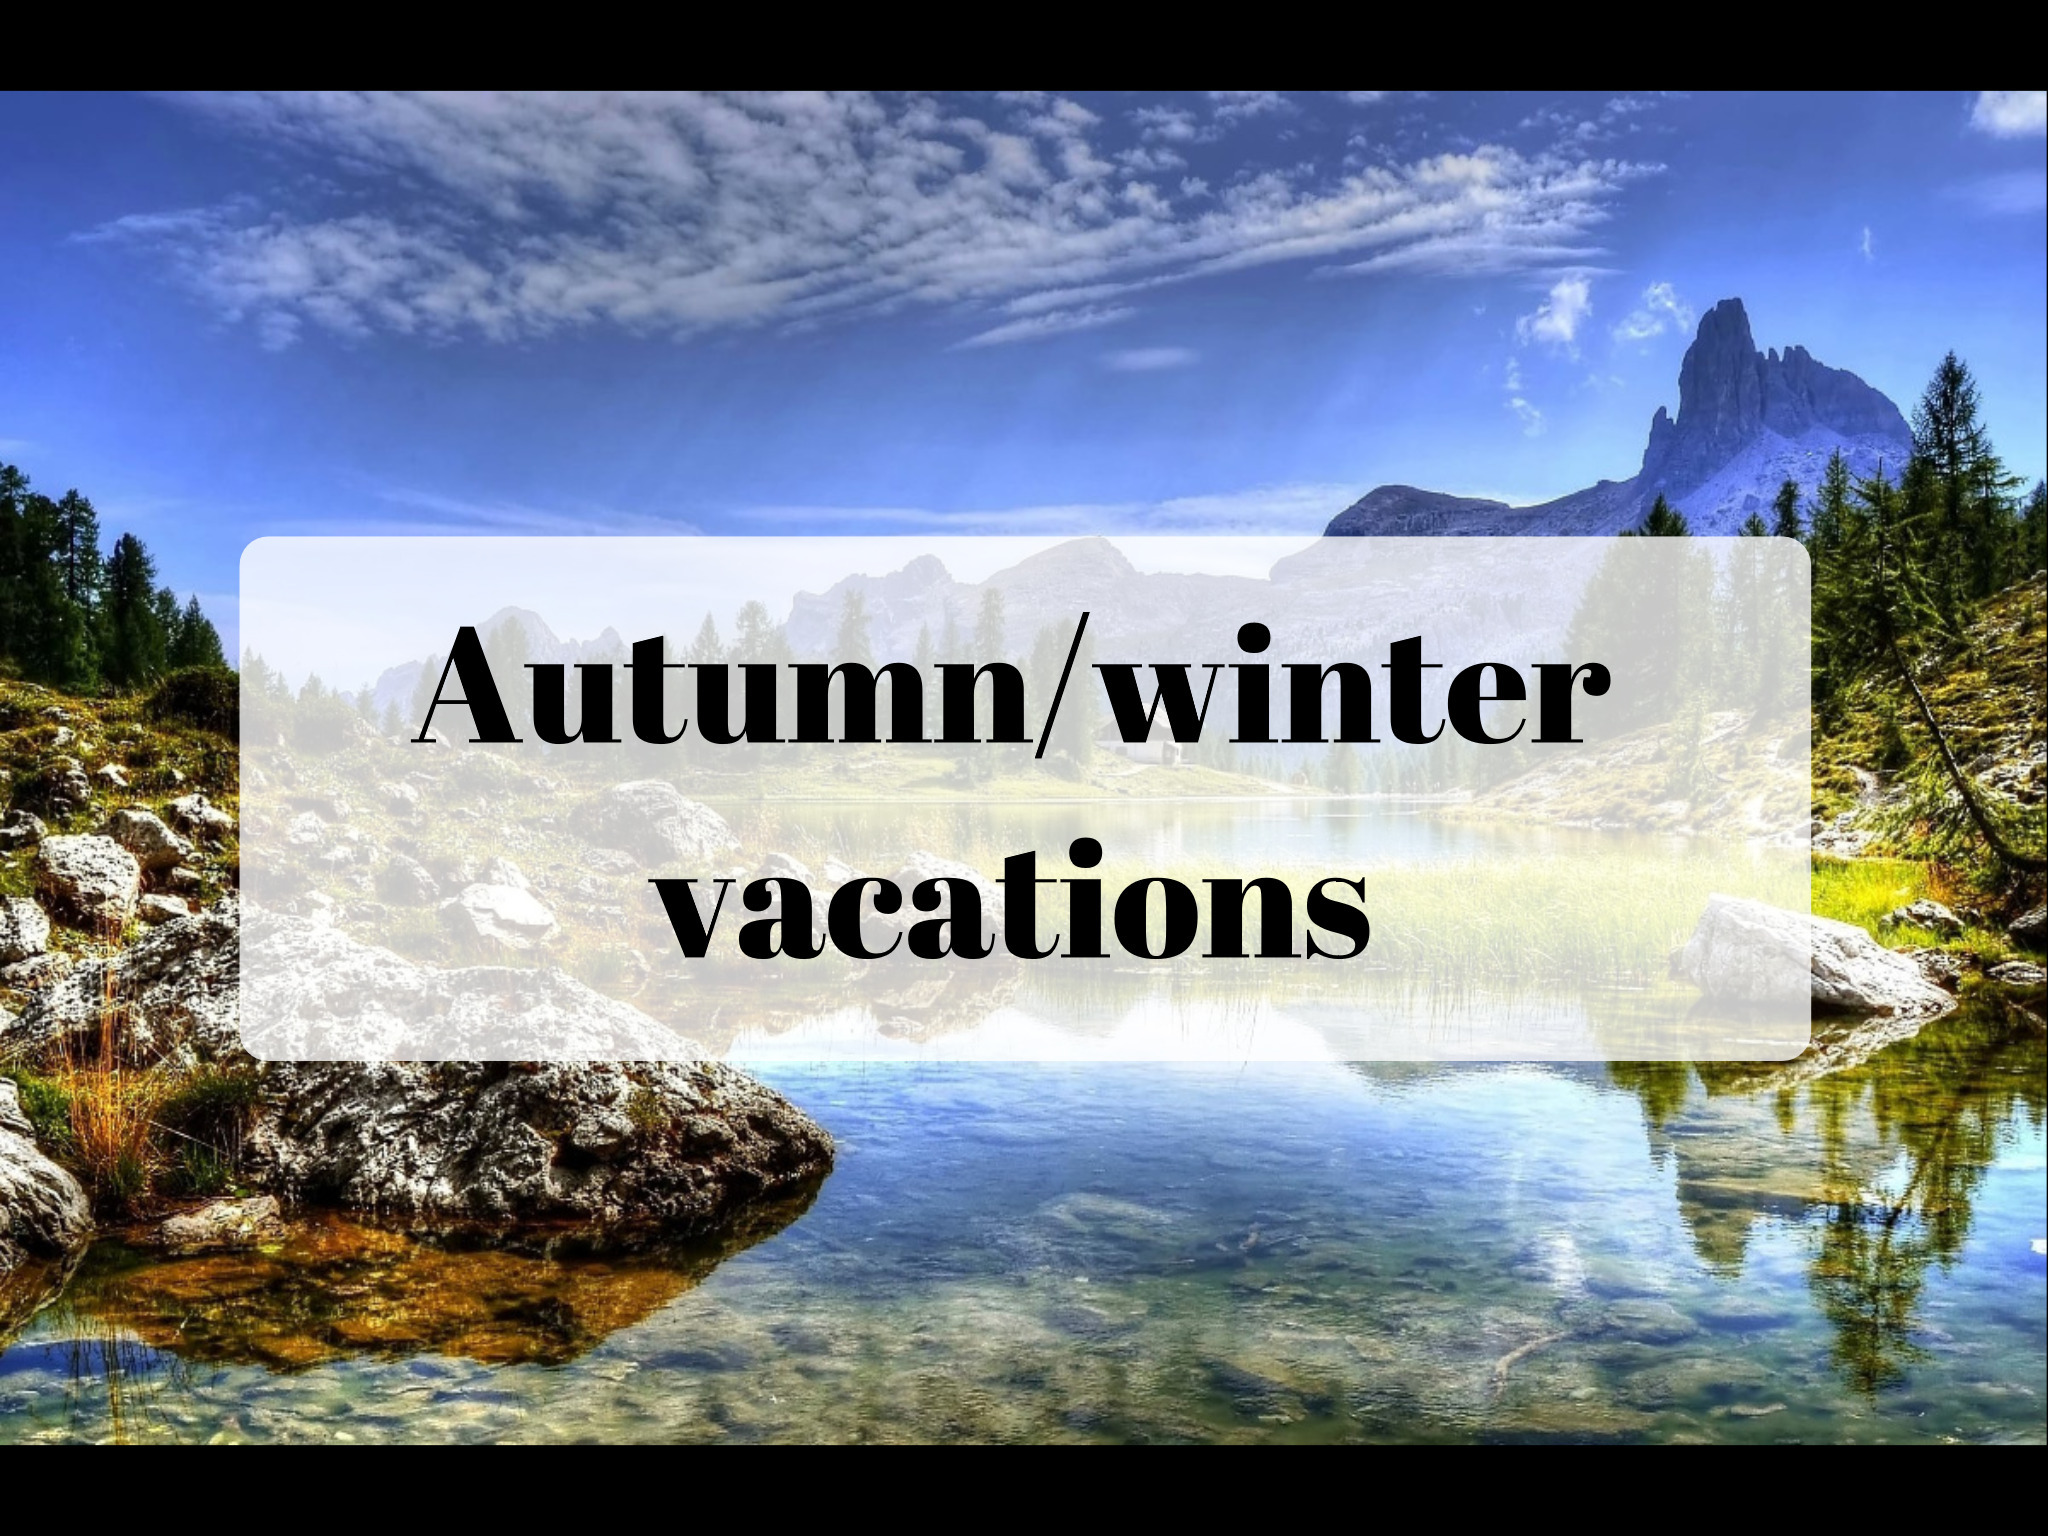 как спланировать отдых осенью и зимой